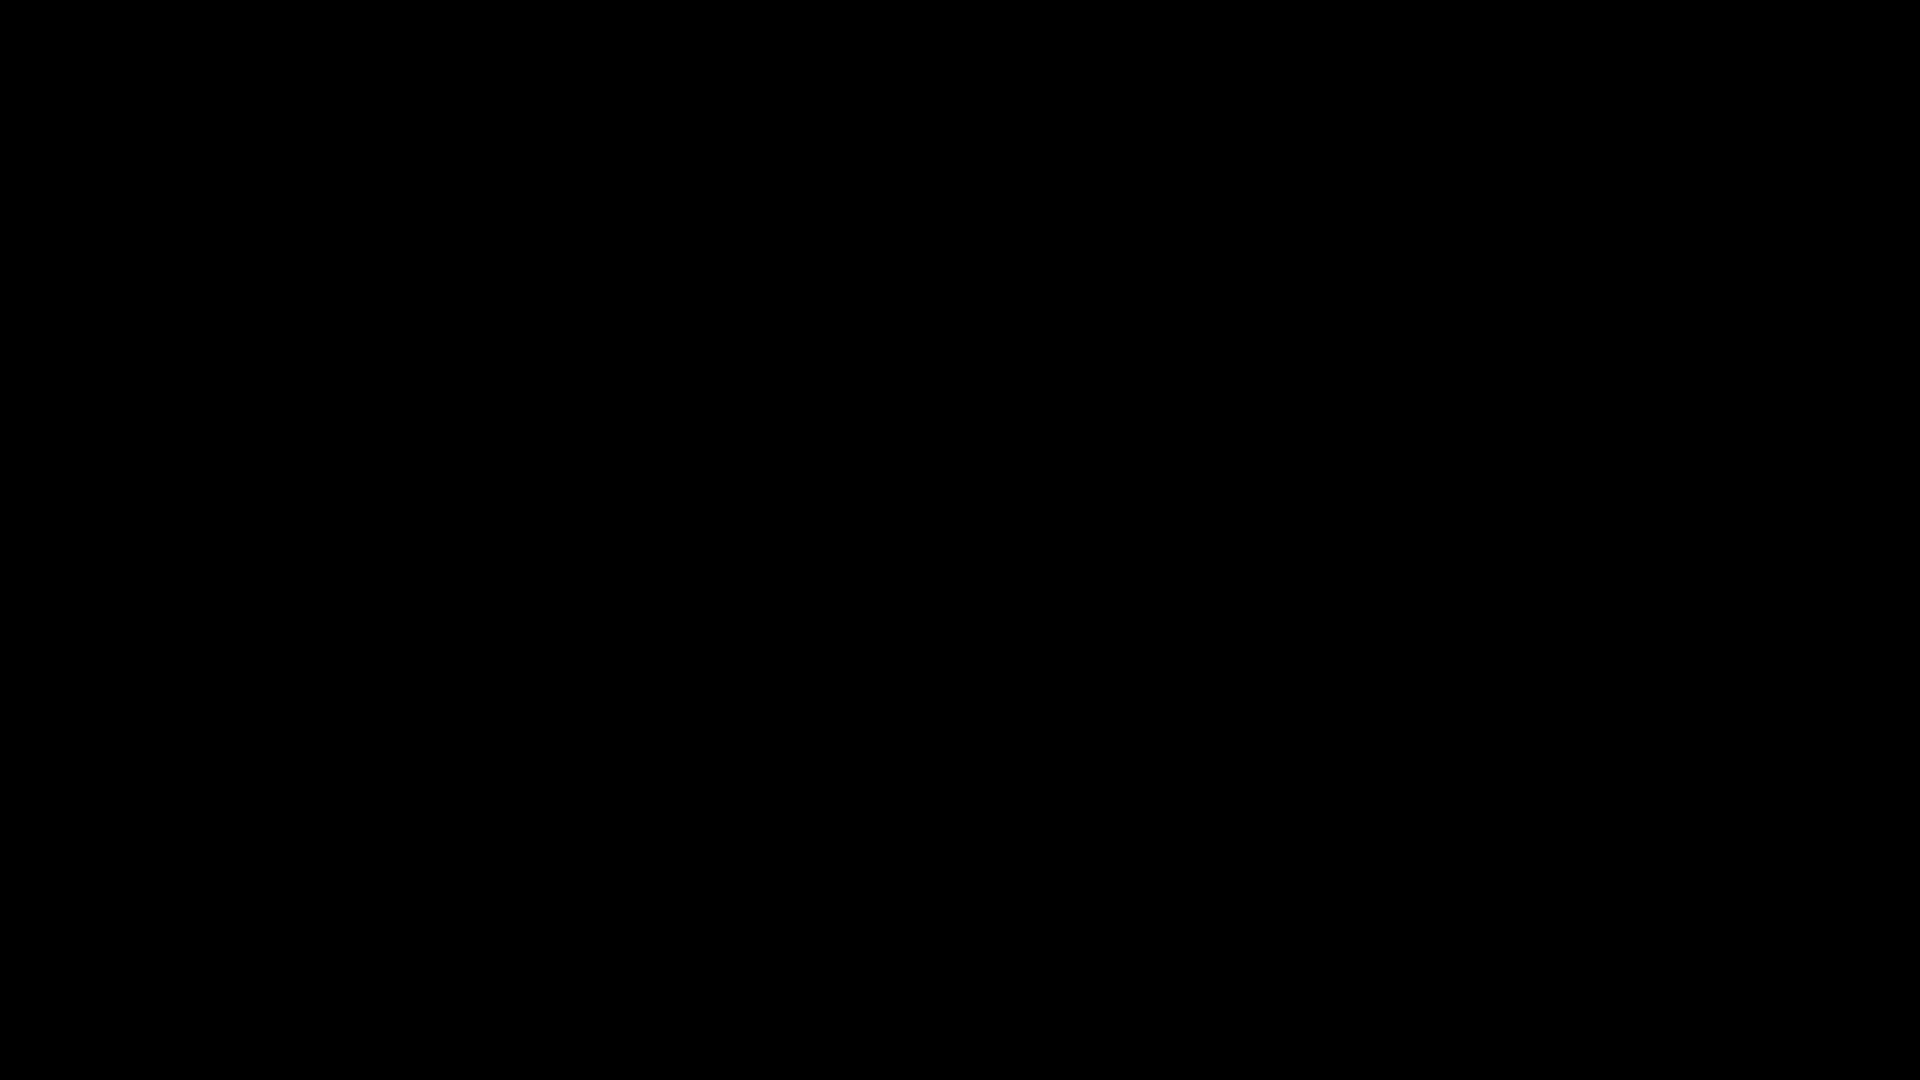 Rose animated logo